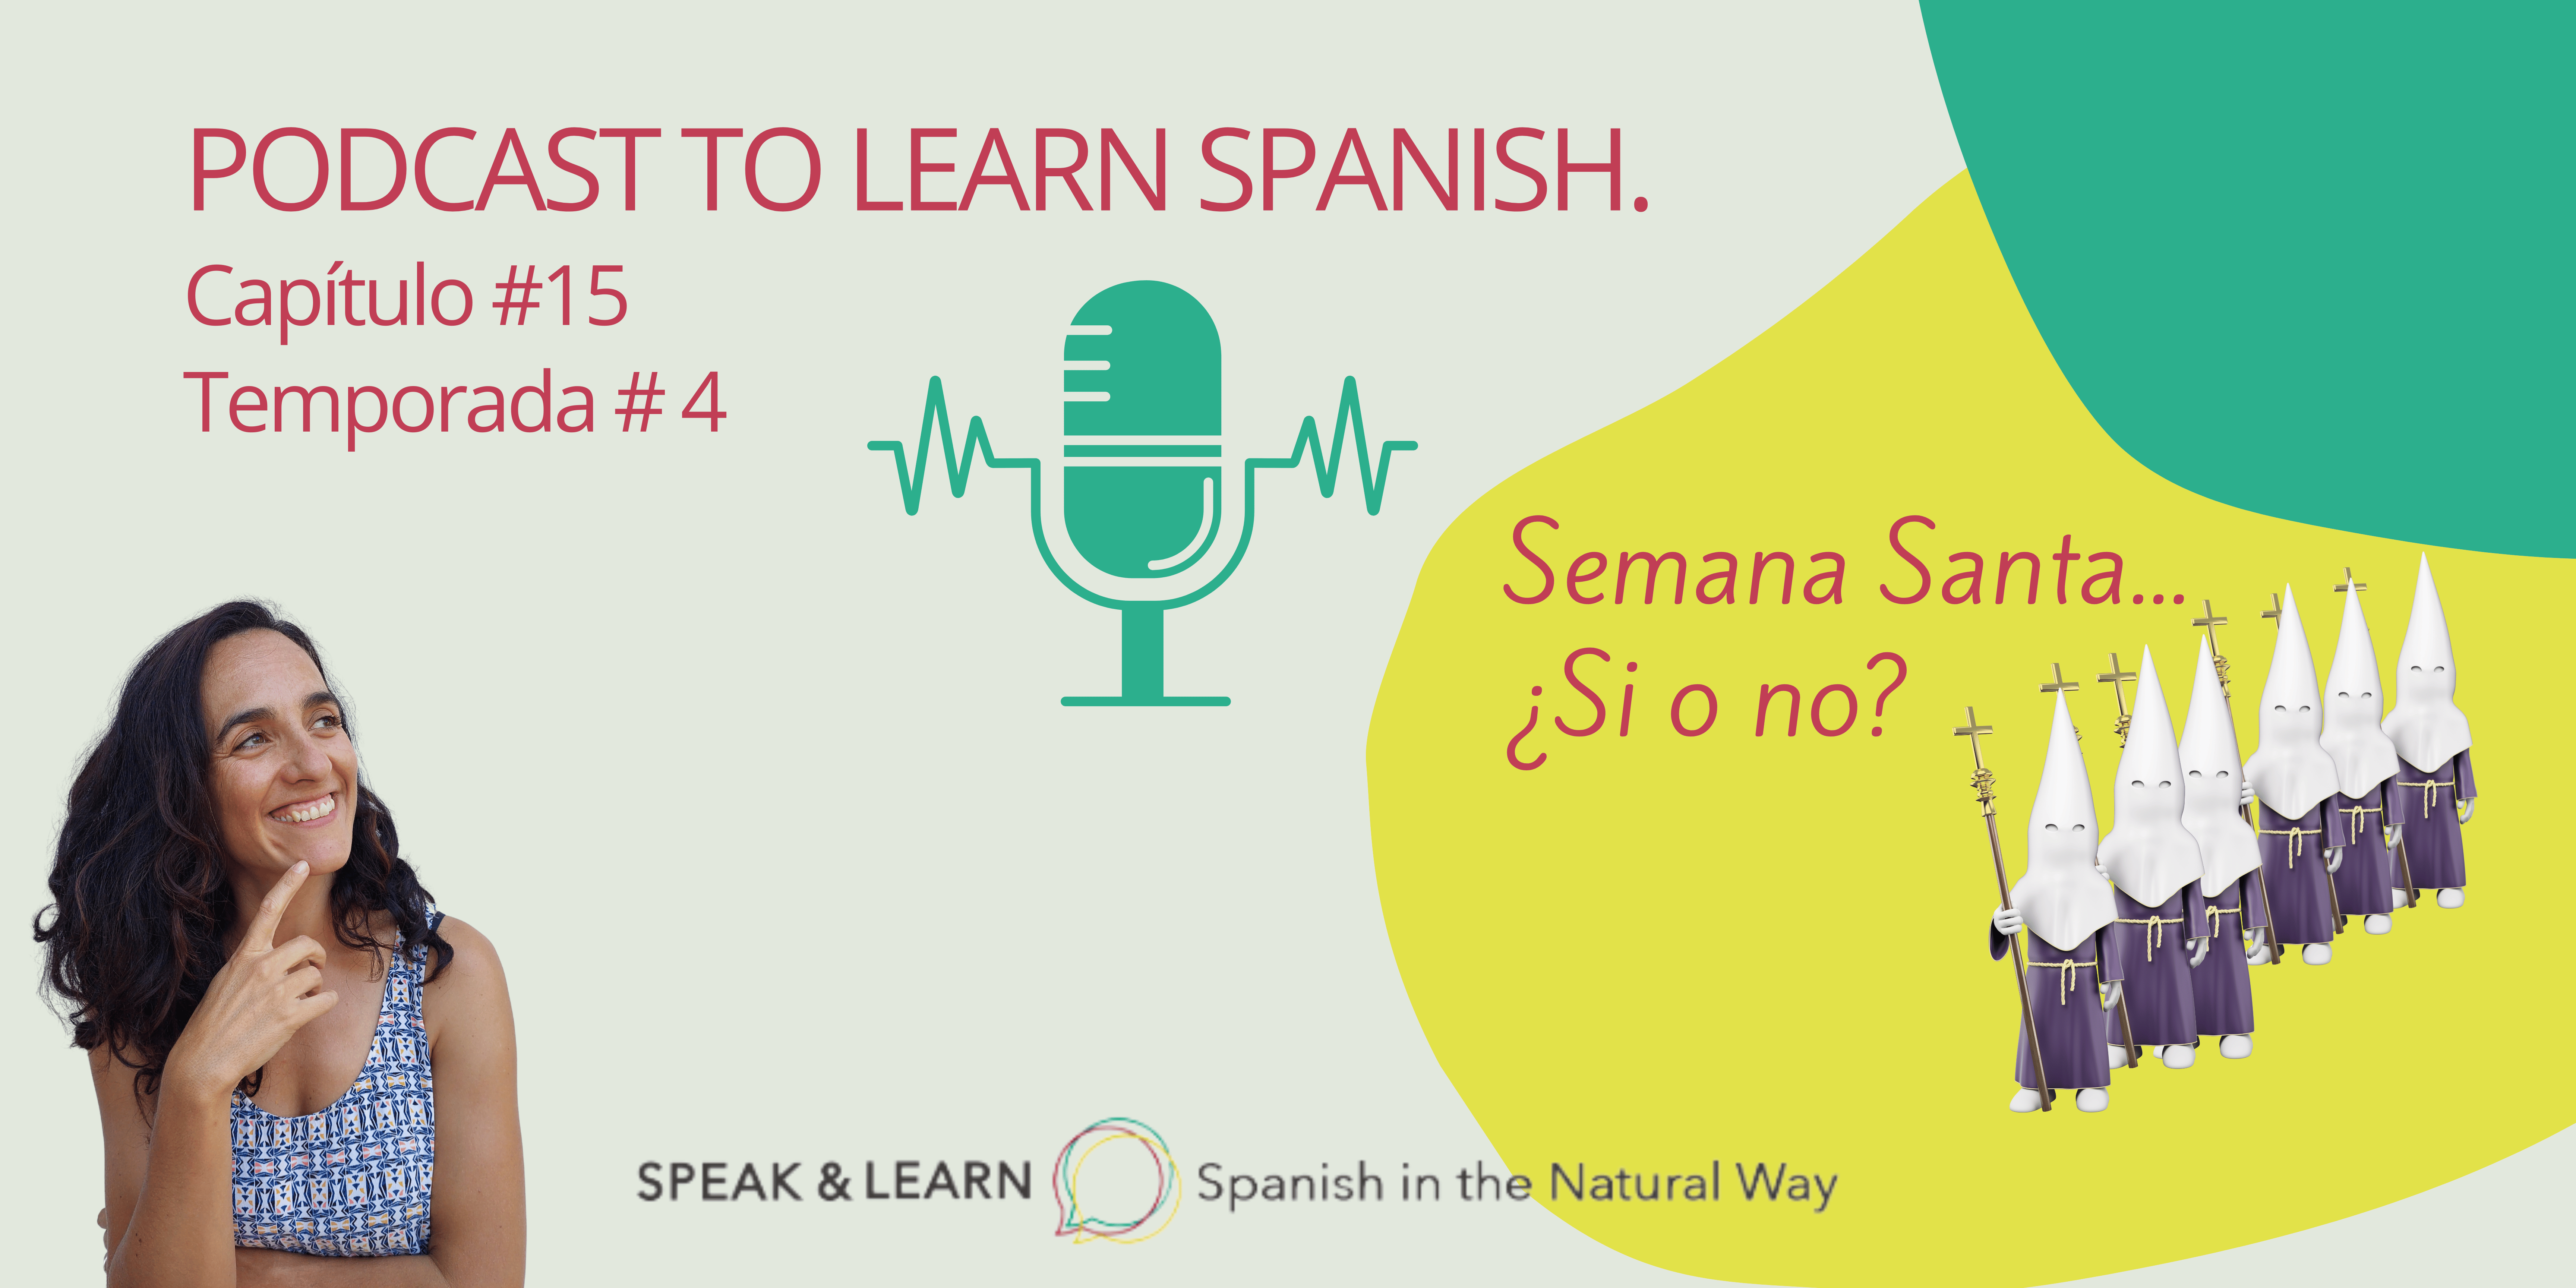 Hoy aprendemos español y hablamos sobre la Semana Santa en España.